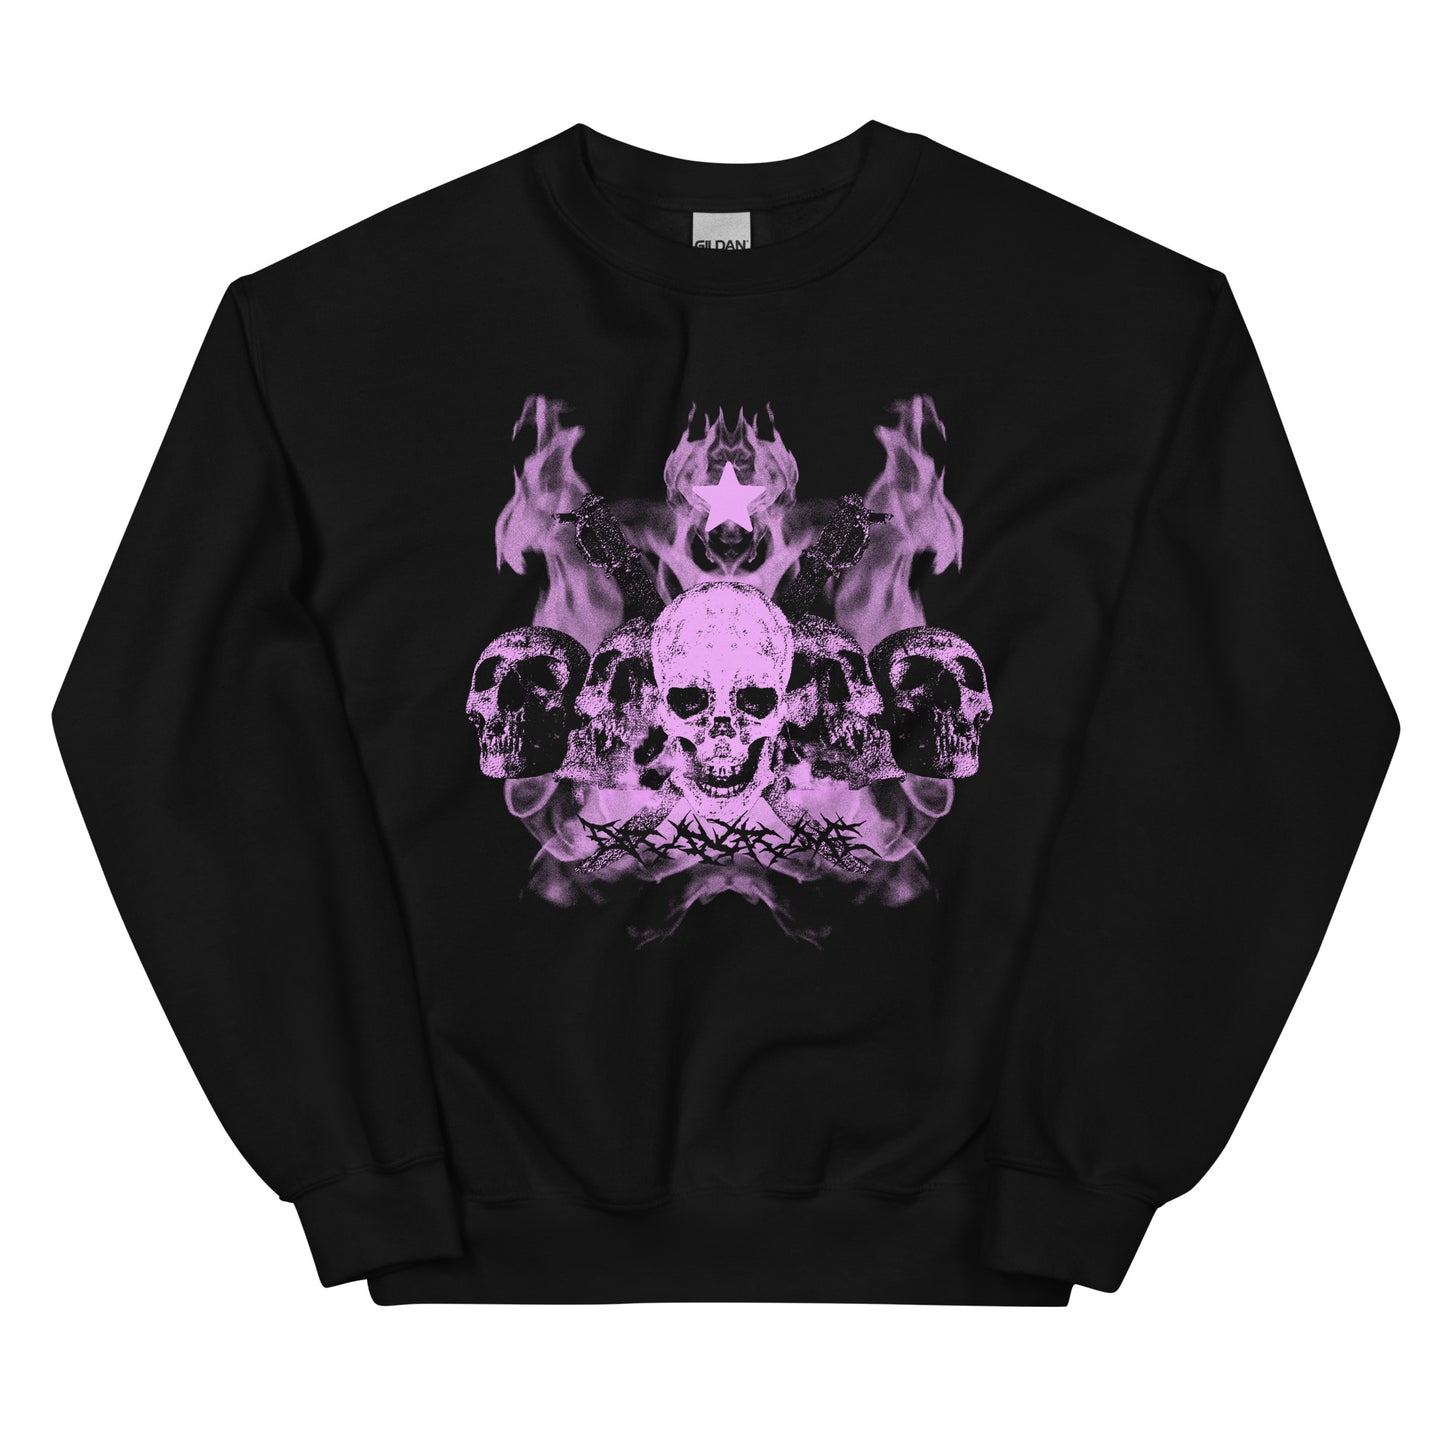 Grunge Y2k Alt aesthetic fashion Sweatshirt